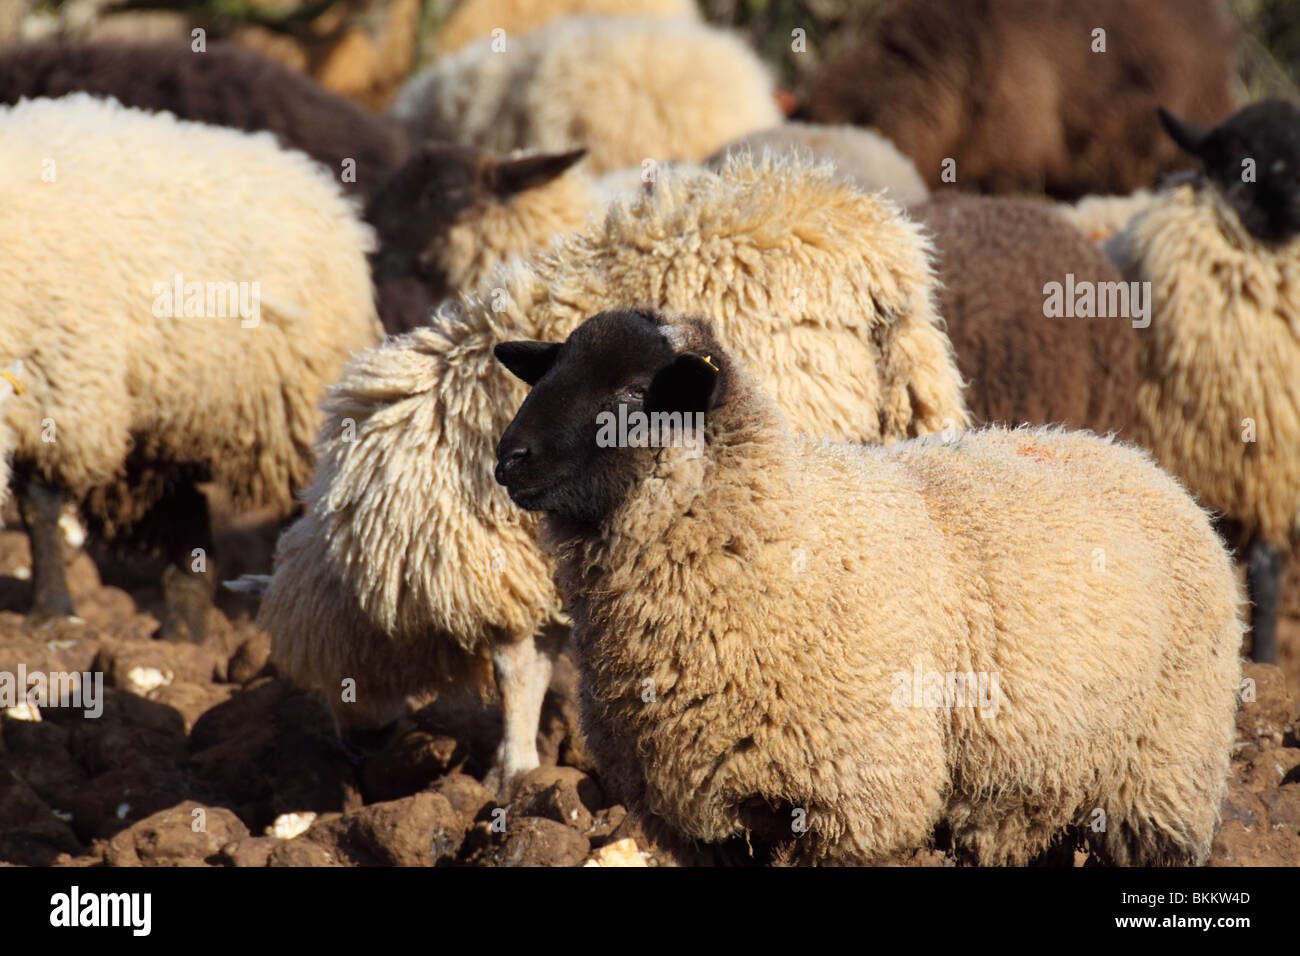 domestic sheep ovis aries ruminant mammal Stock Photo